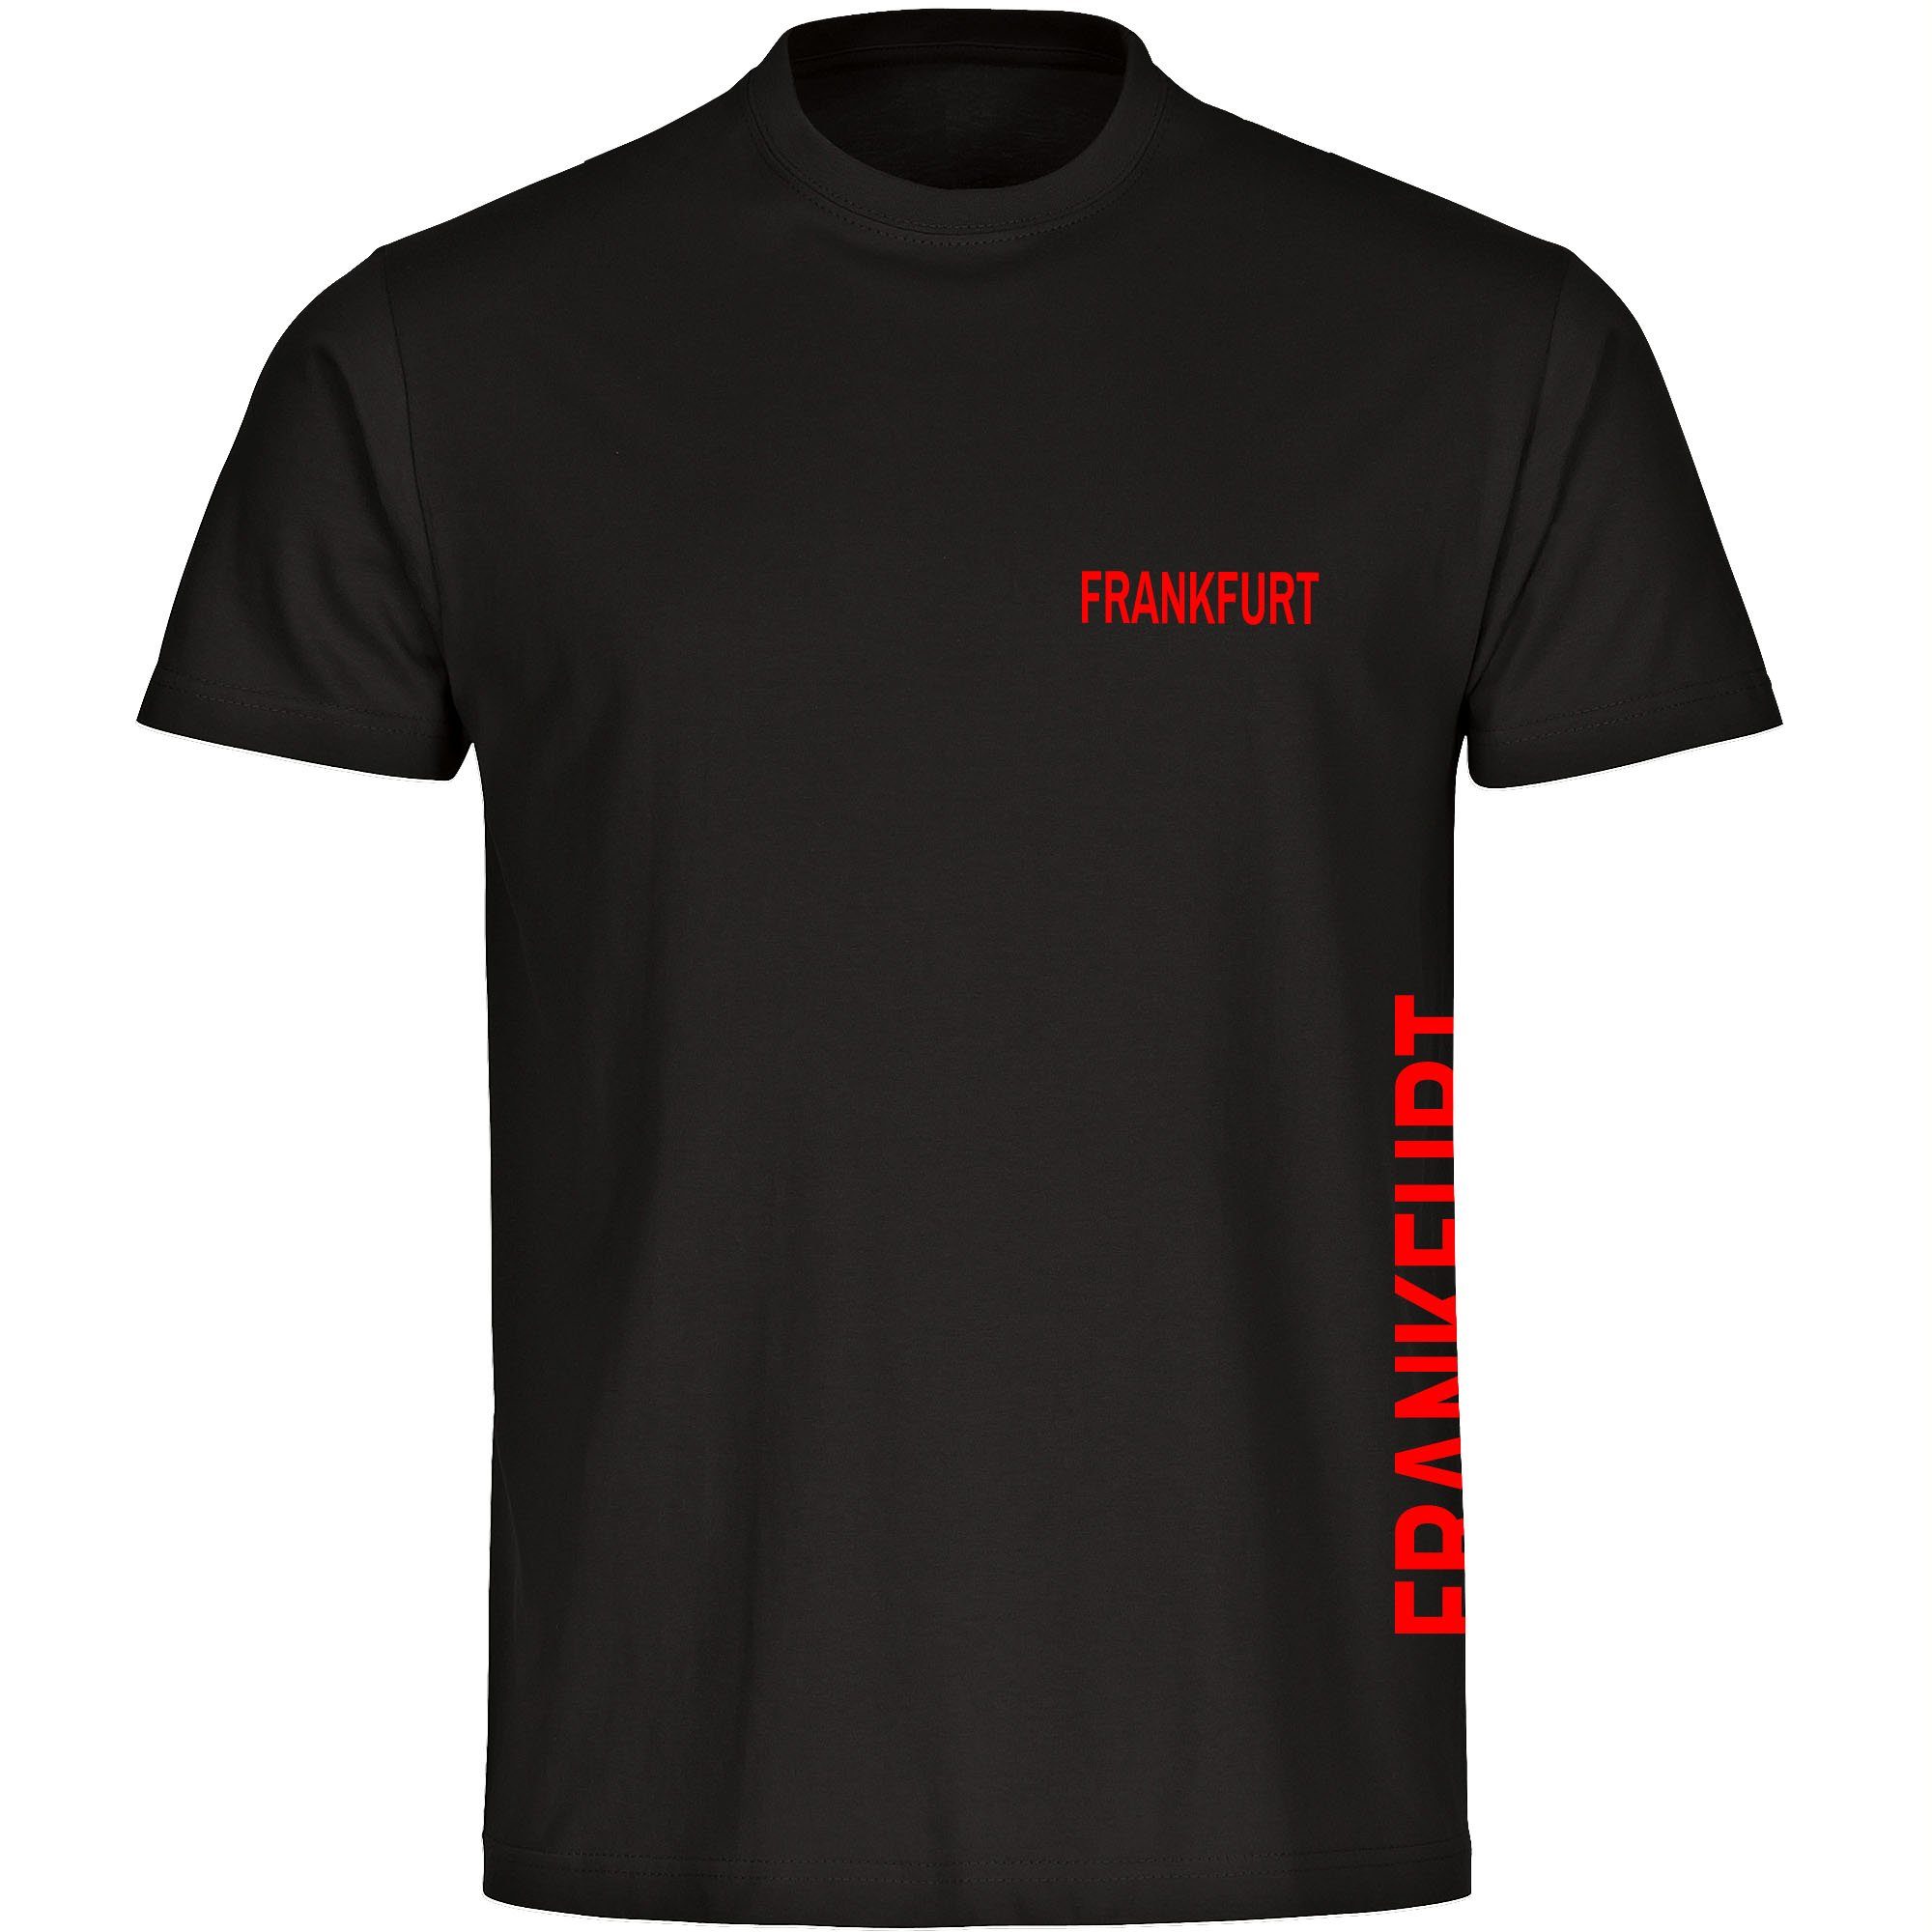 multifanshop T-Shirt Herren Frankfurt - Brust & Seite - Männer